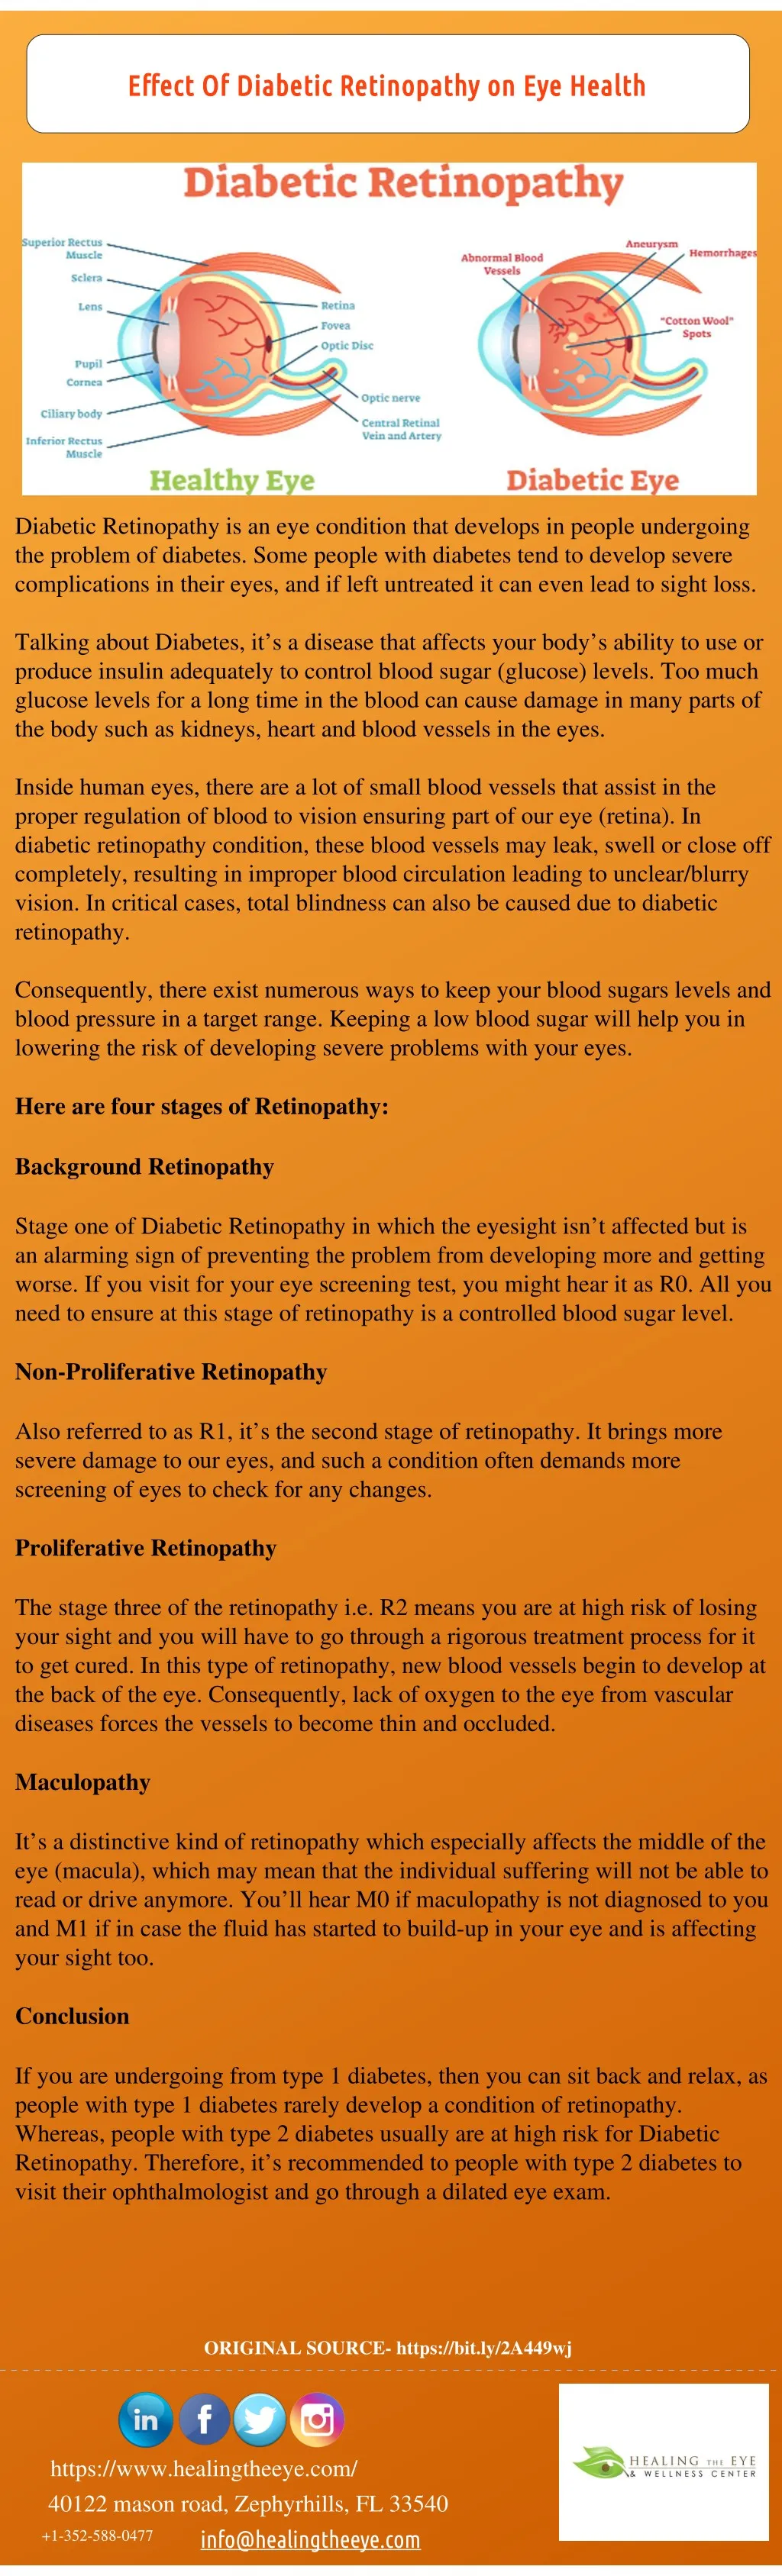 effect of diabetic retinopathy on eye health